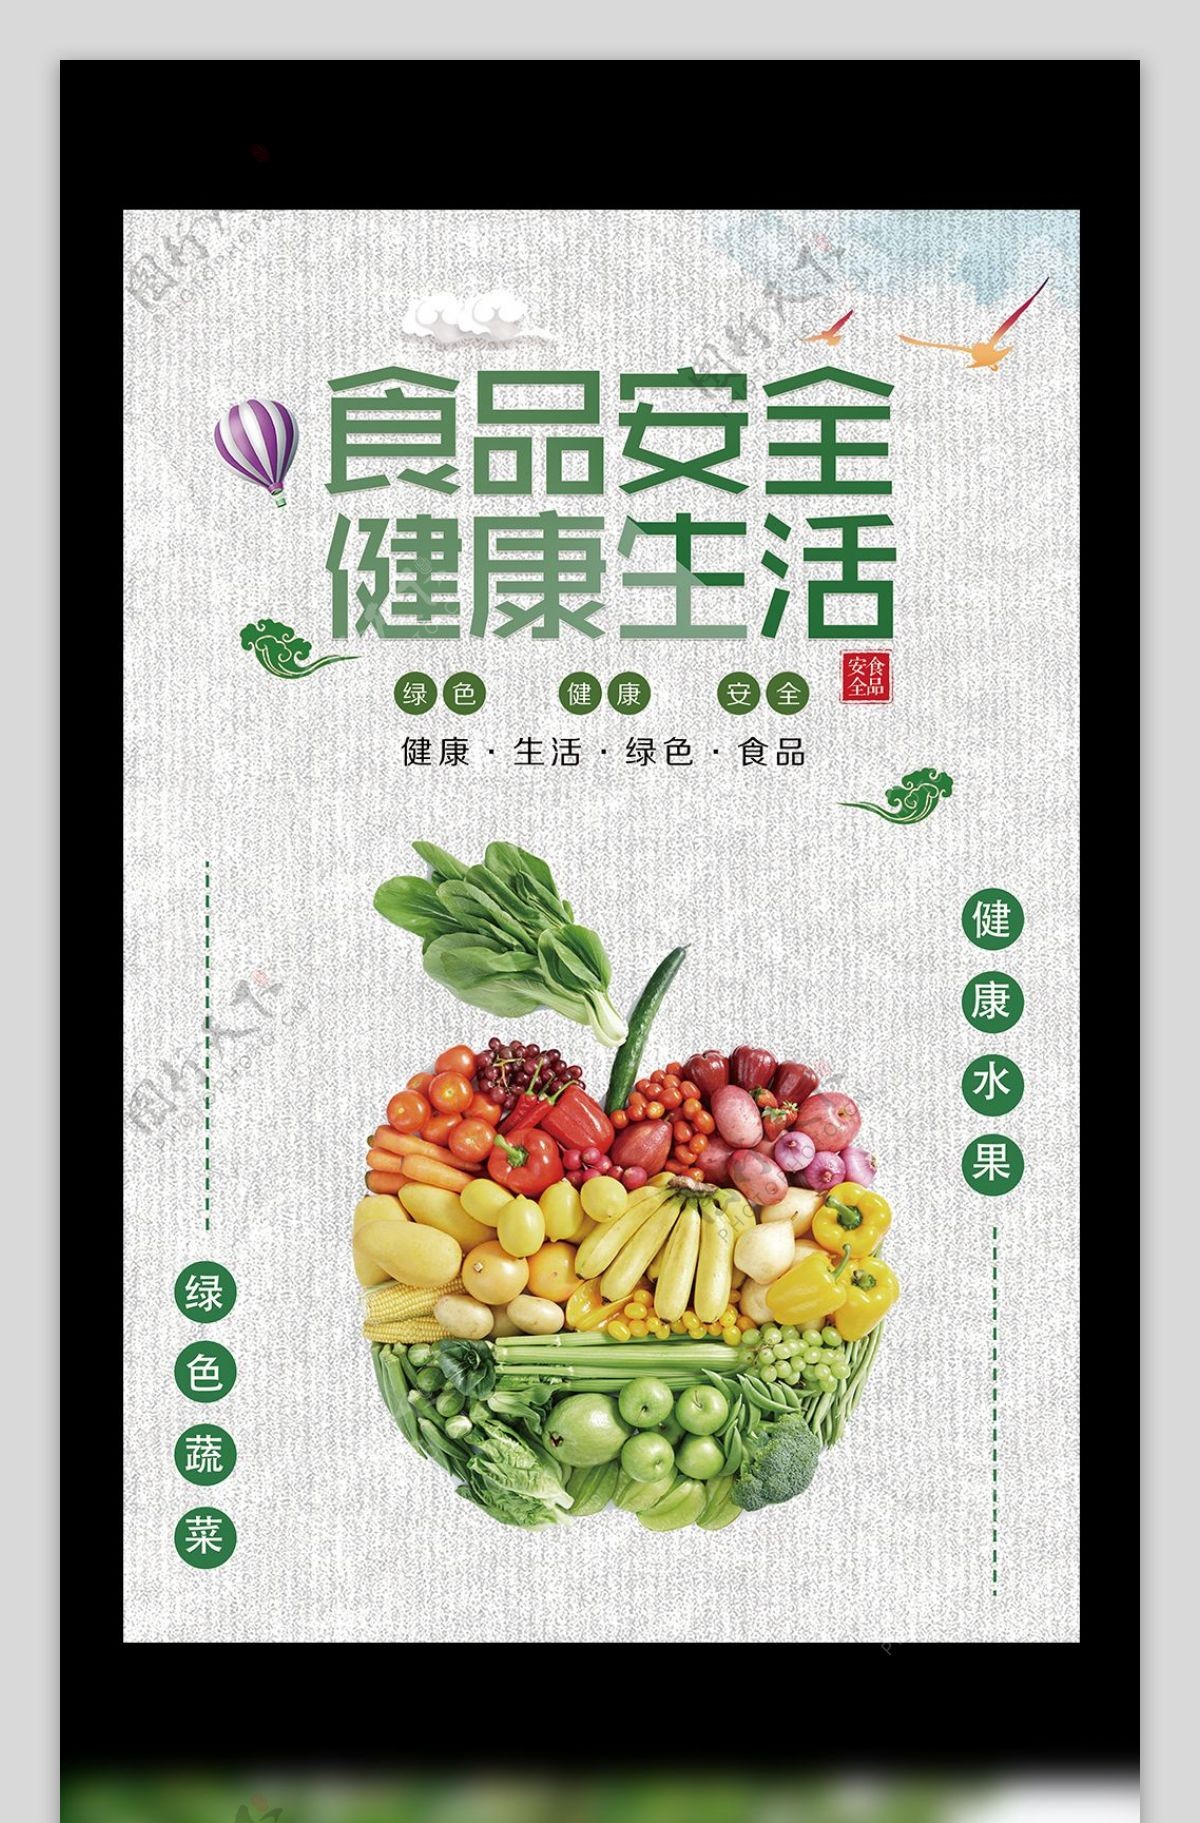 2017食品安全海报设计